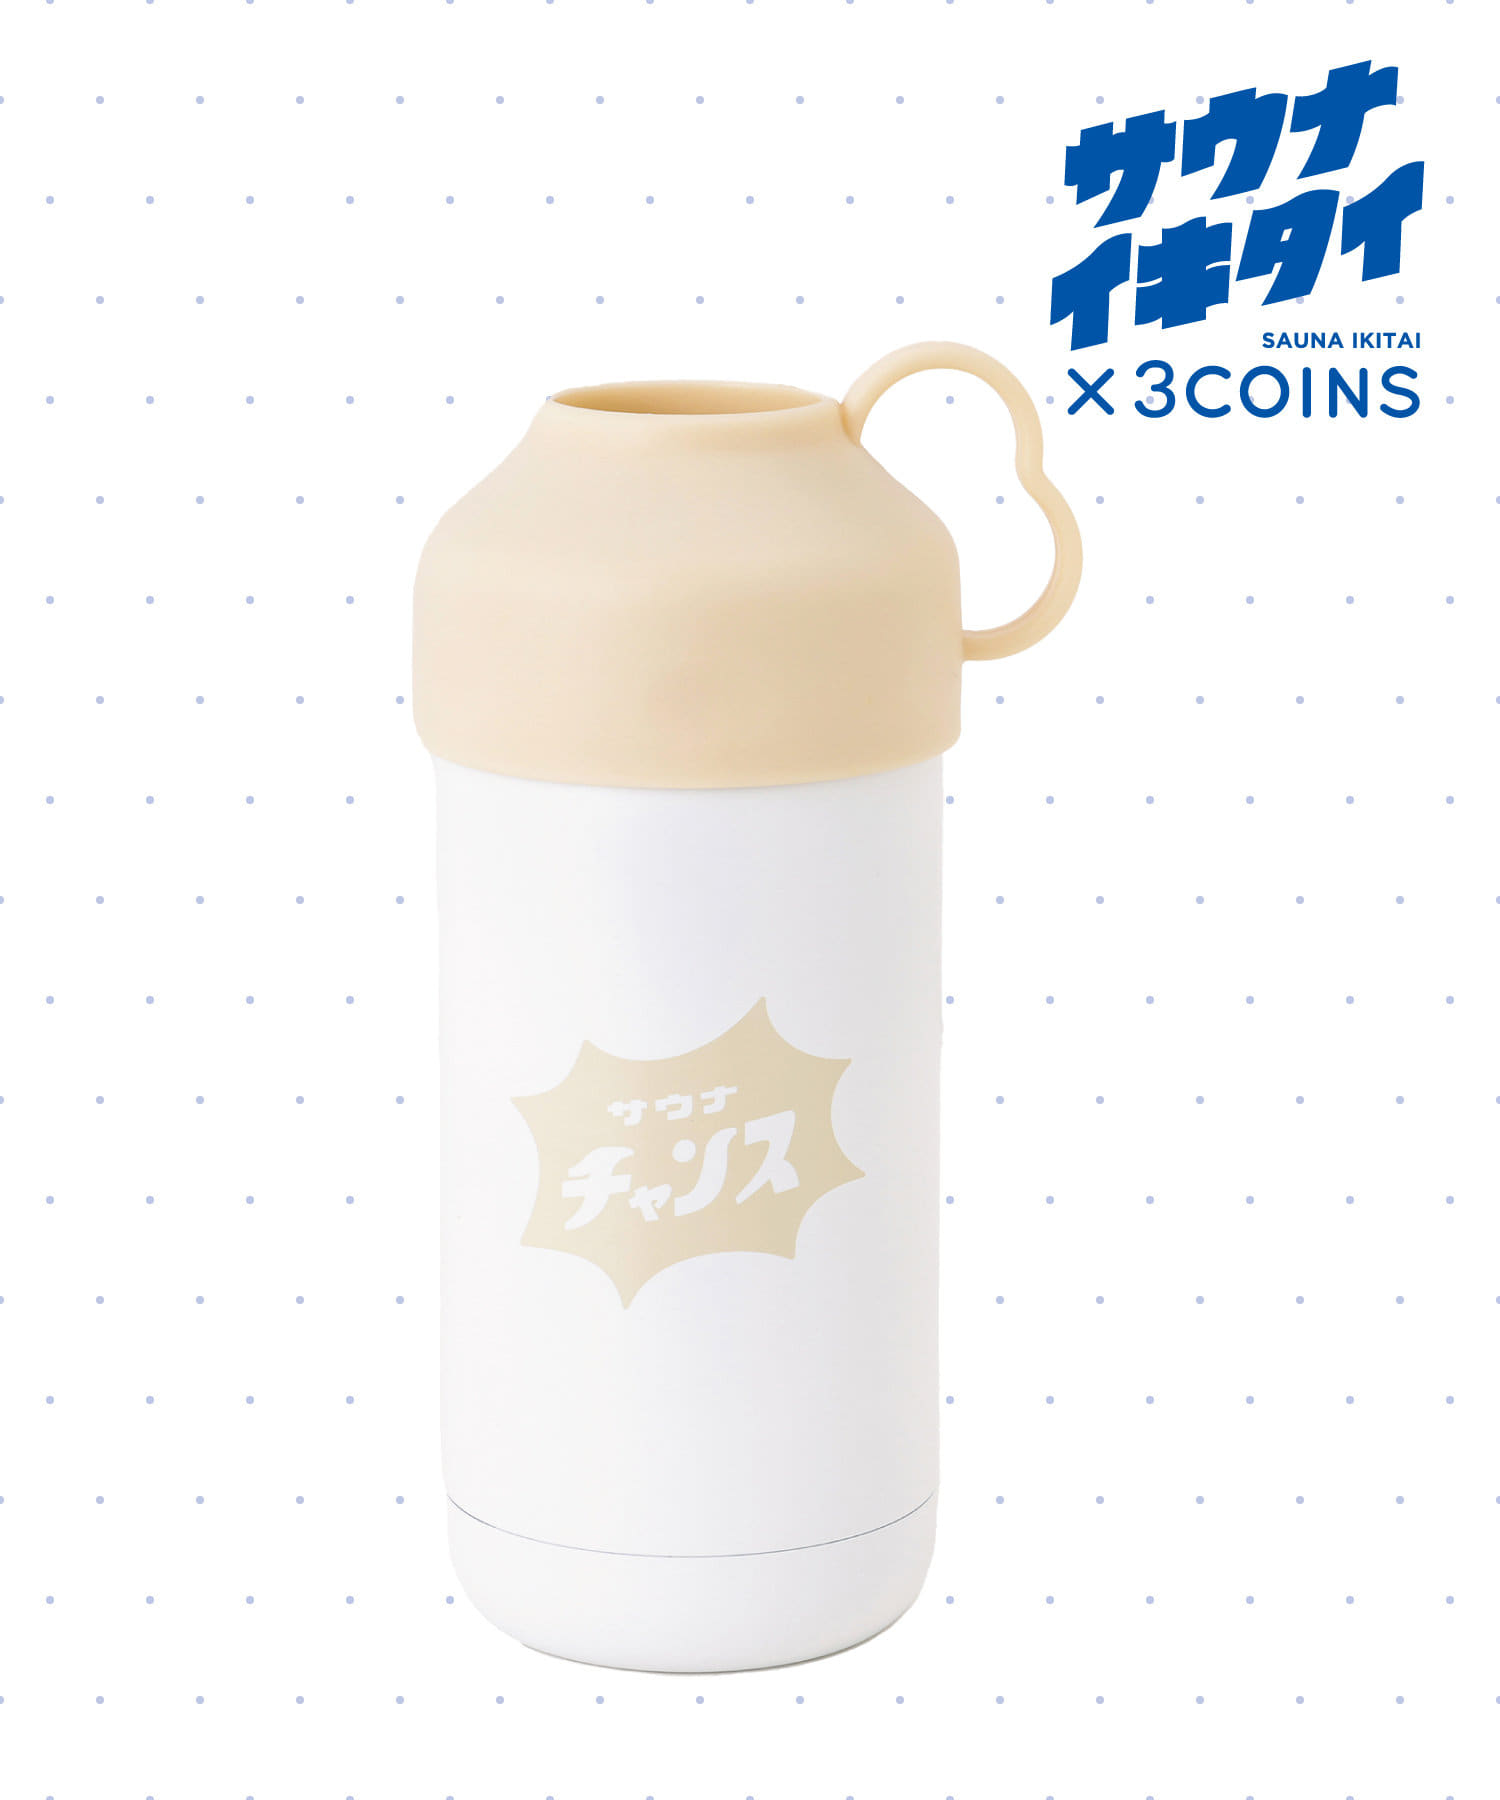 サウナボトル 3coins サウナイキタイ - 日用品/生活雑貨/旅行